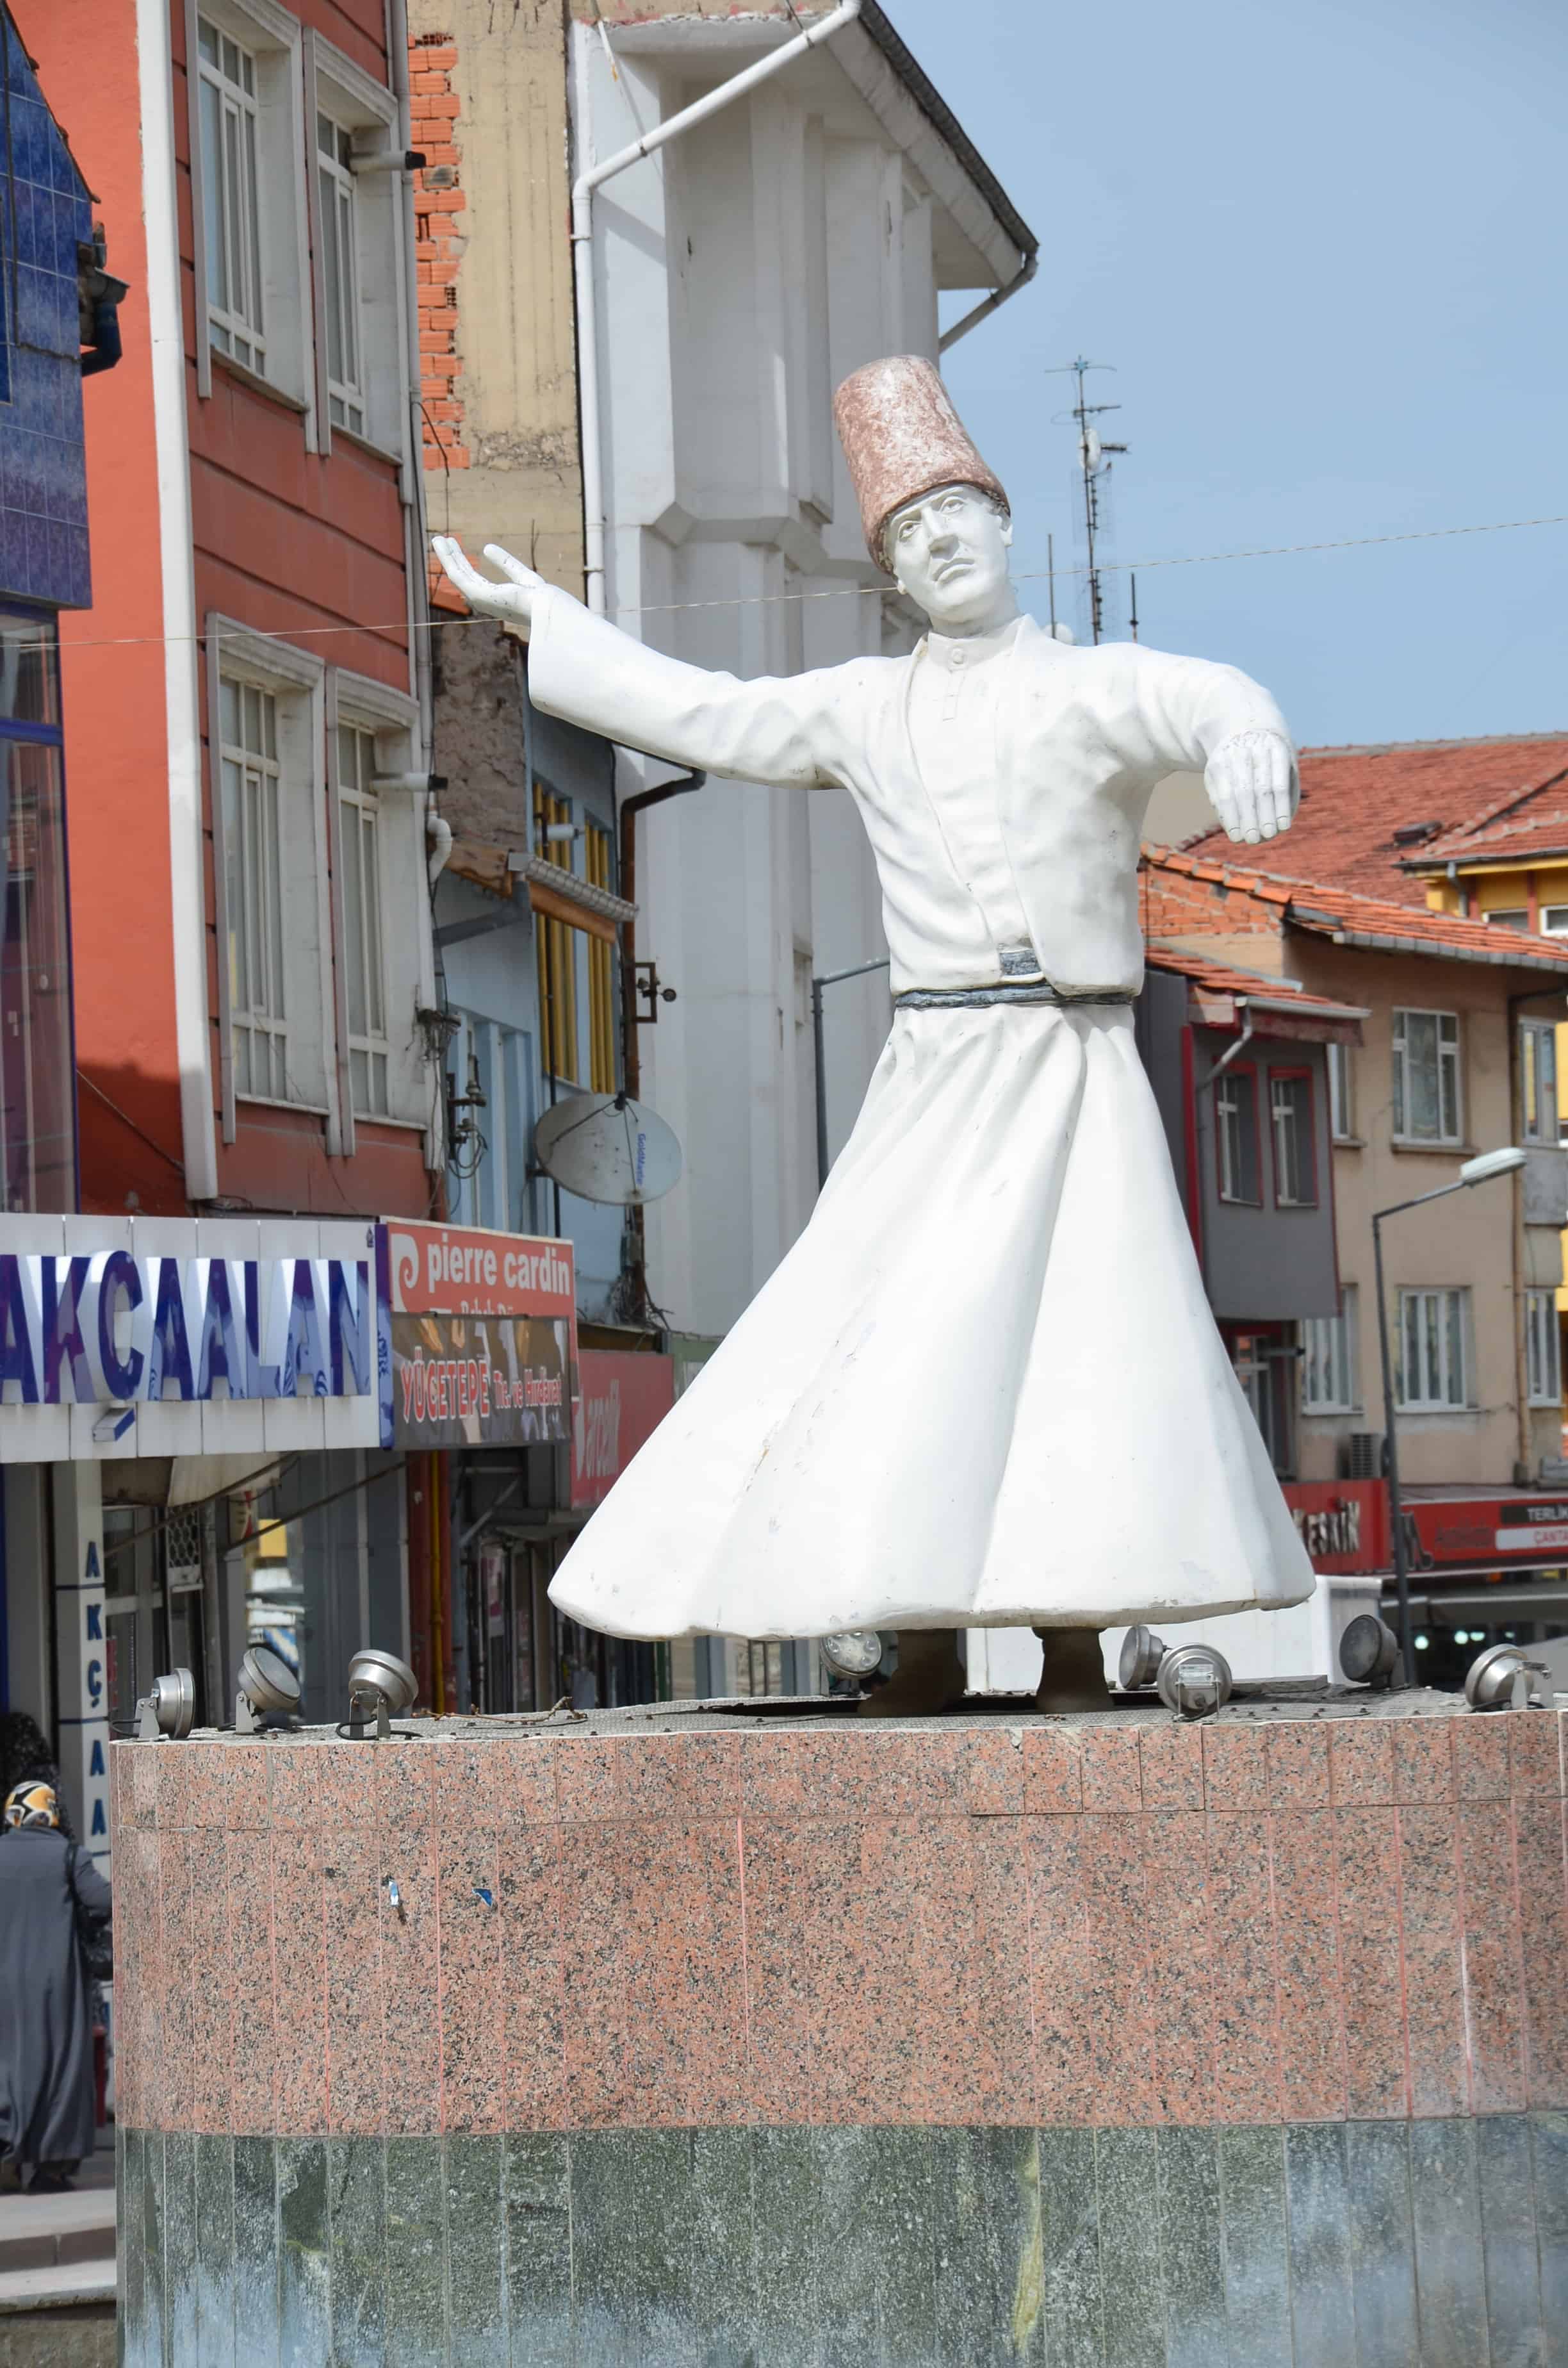 Whirling dervish statue in Kütahya, Turkey